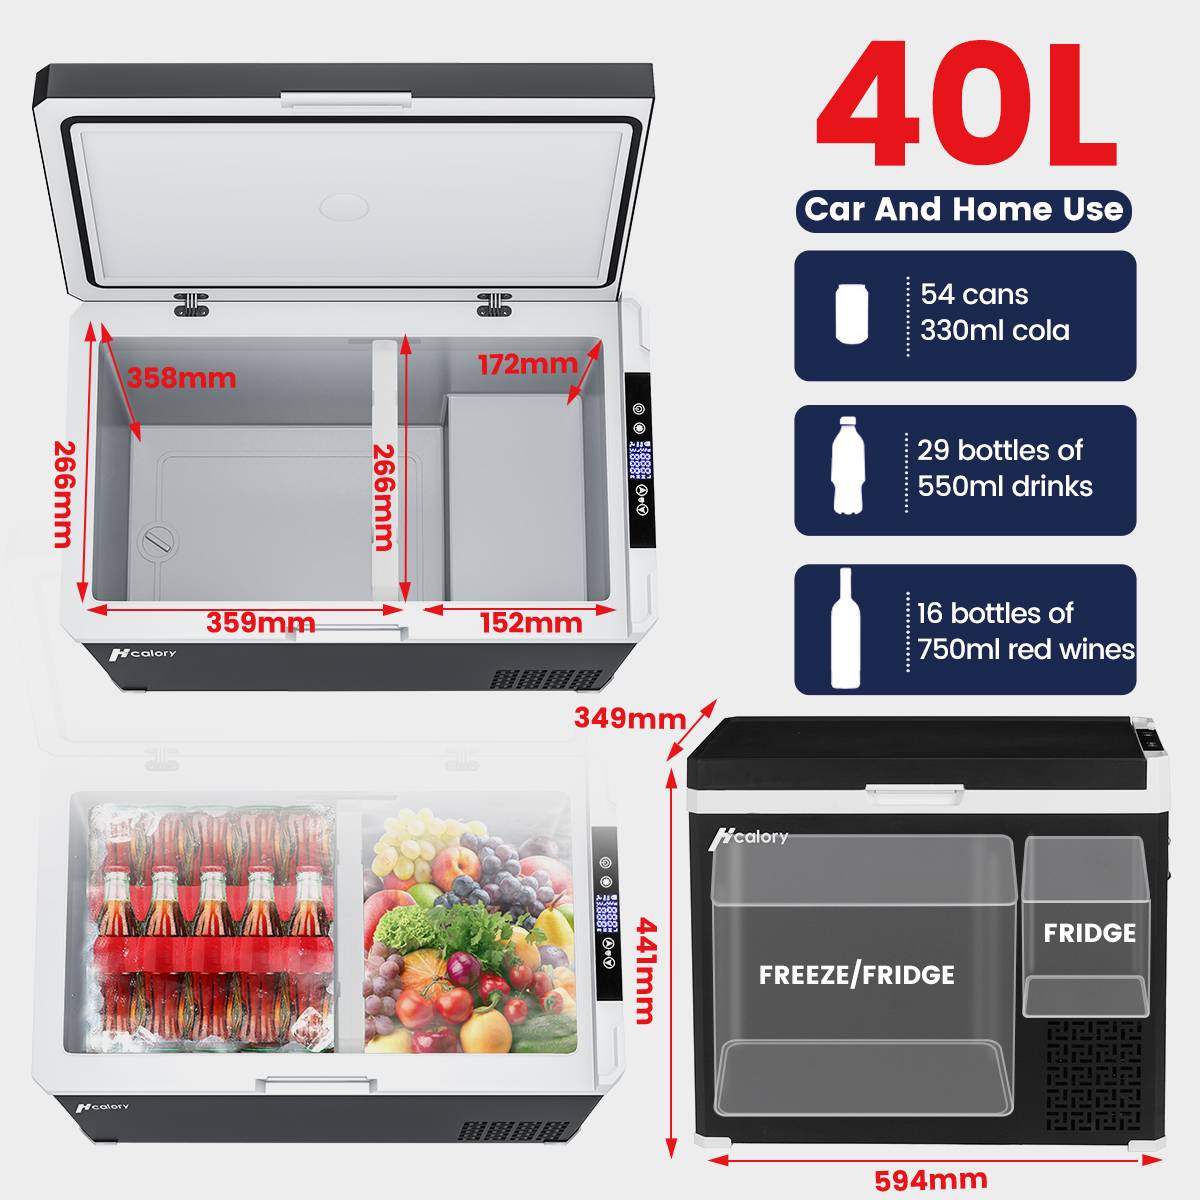 Car Refrigerator, Hcalory, Portable, Electric, 35L, 240V AC, Black